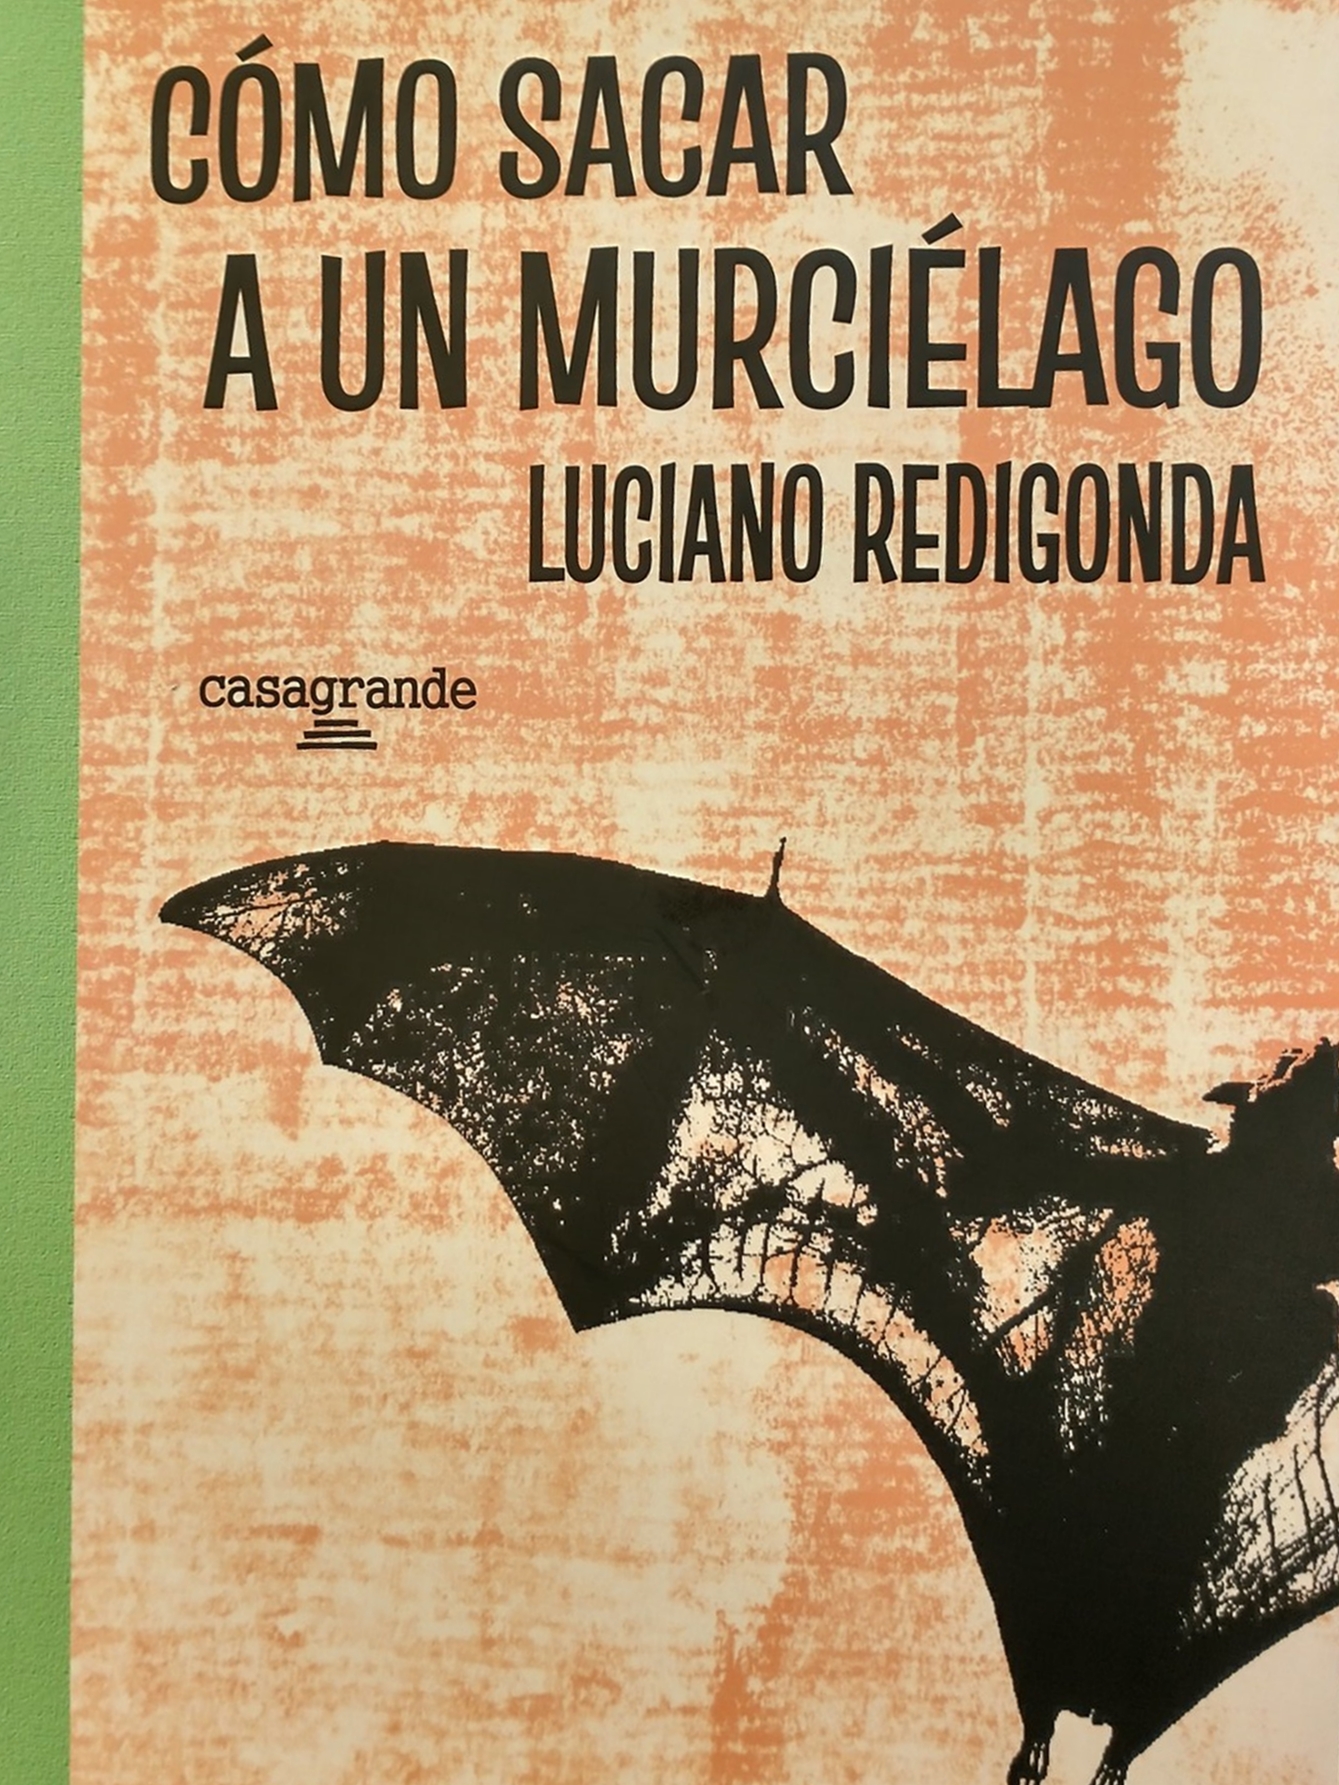 Novedad literaria: «Cómo sacar a un murciélago» del escritor y guionista Luciano Redigonda